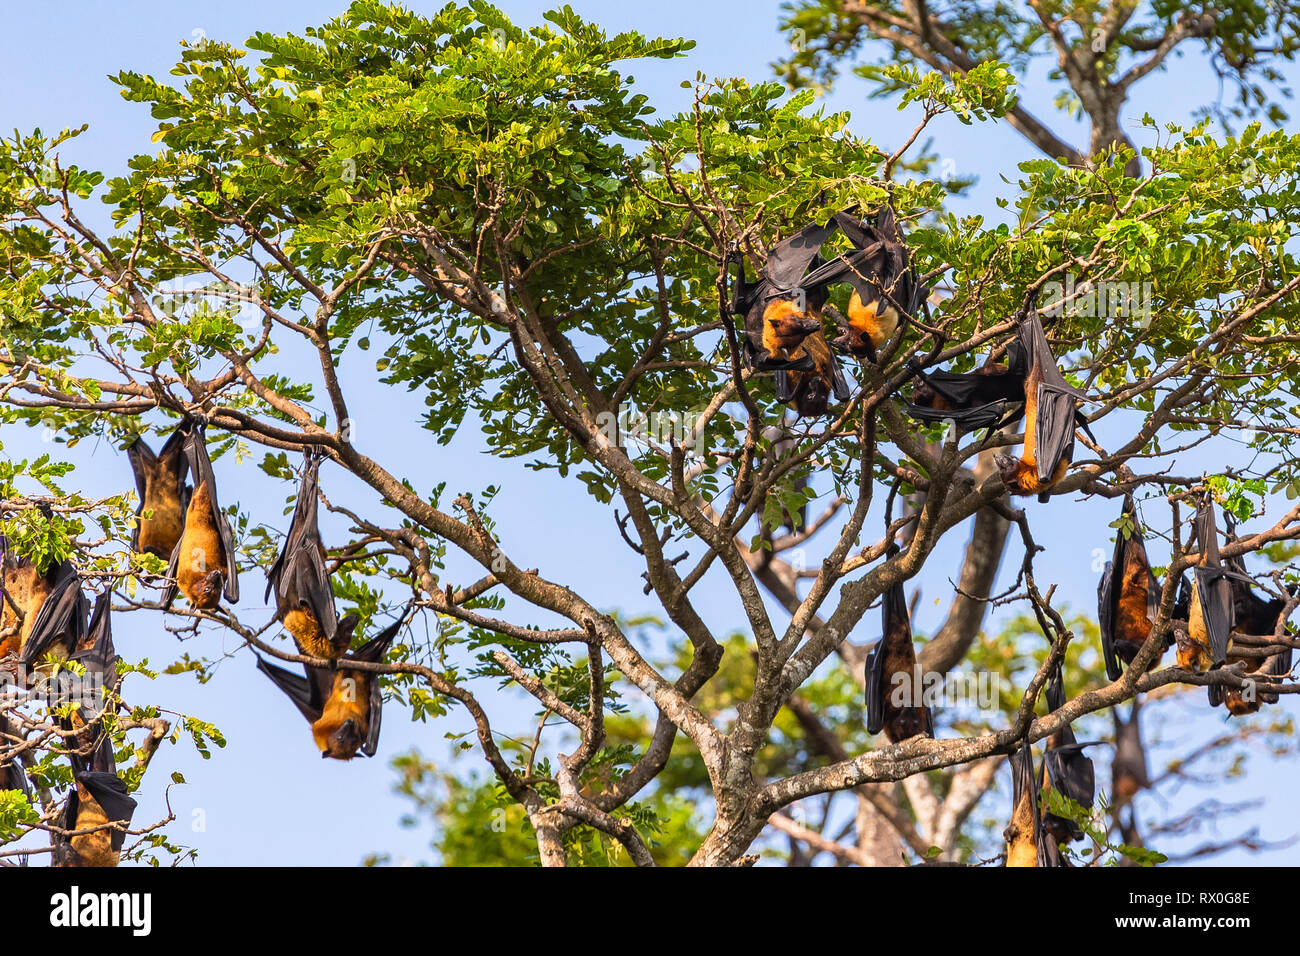 Fruit bat trees (Flying fox). Tissamaharama, Sri Lanka. Stock Photo